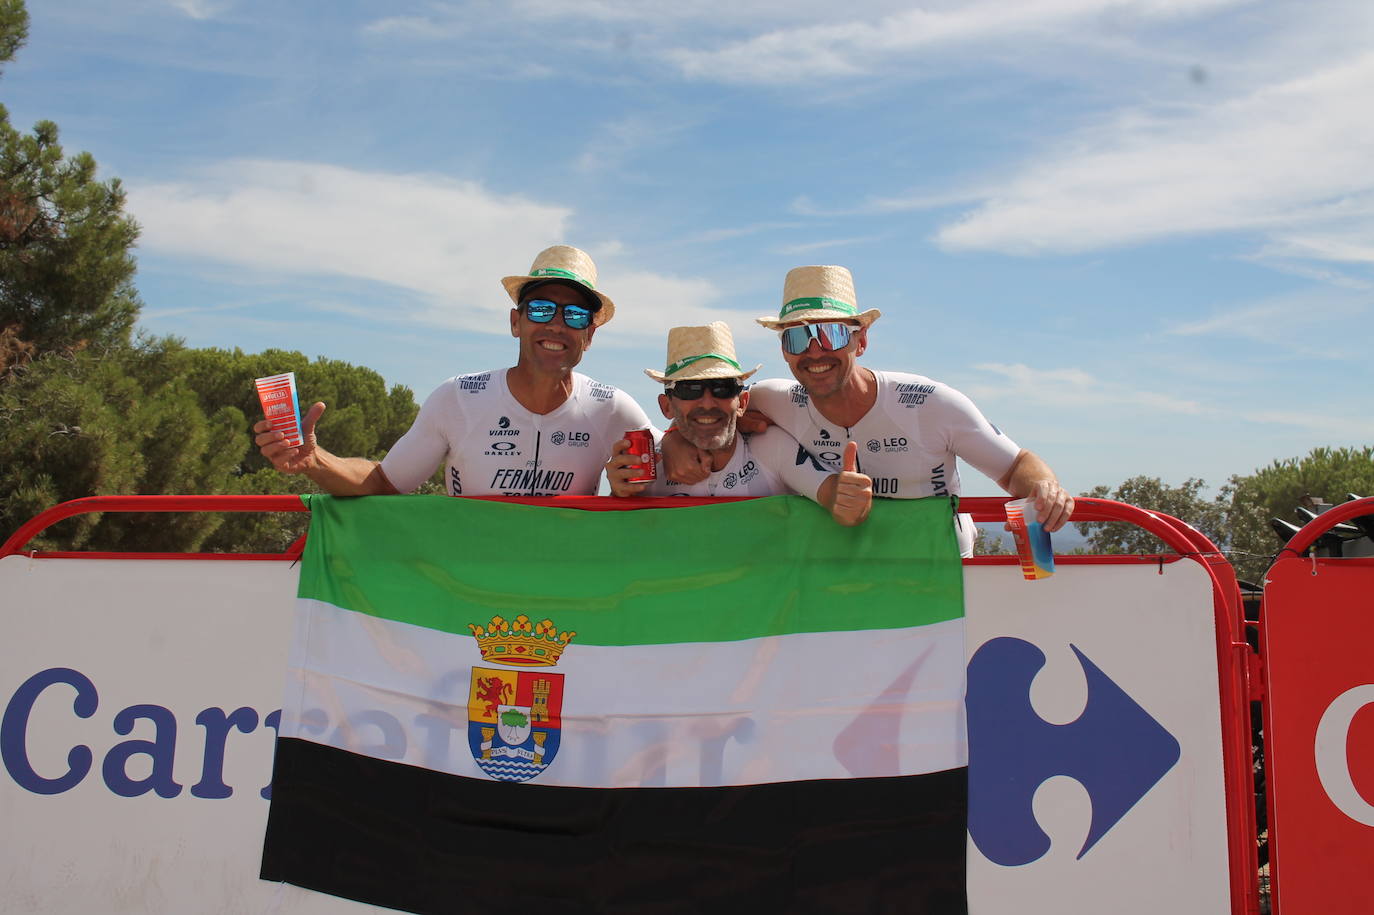 Tres amigos de la AC de Llerena que coronaron la cima con la bandera de Extremadura 